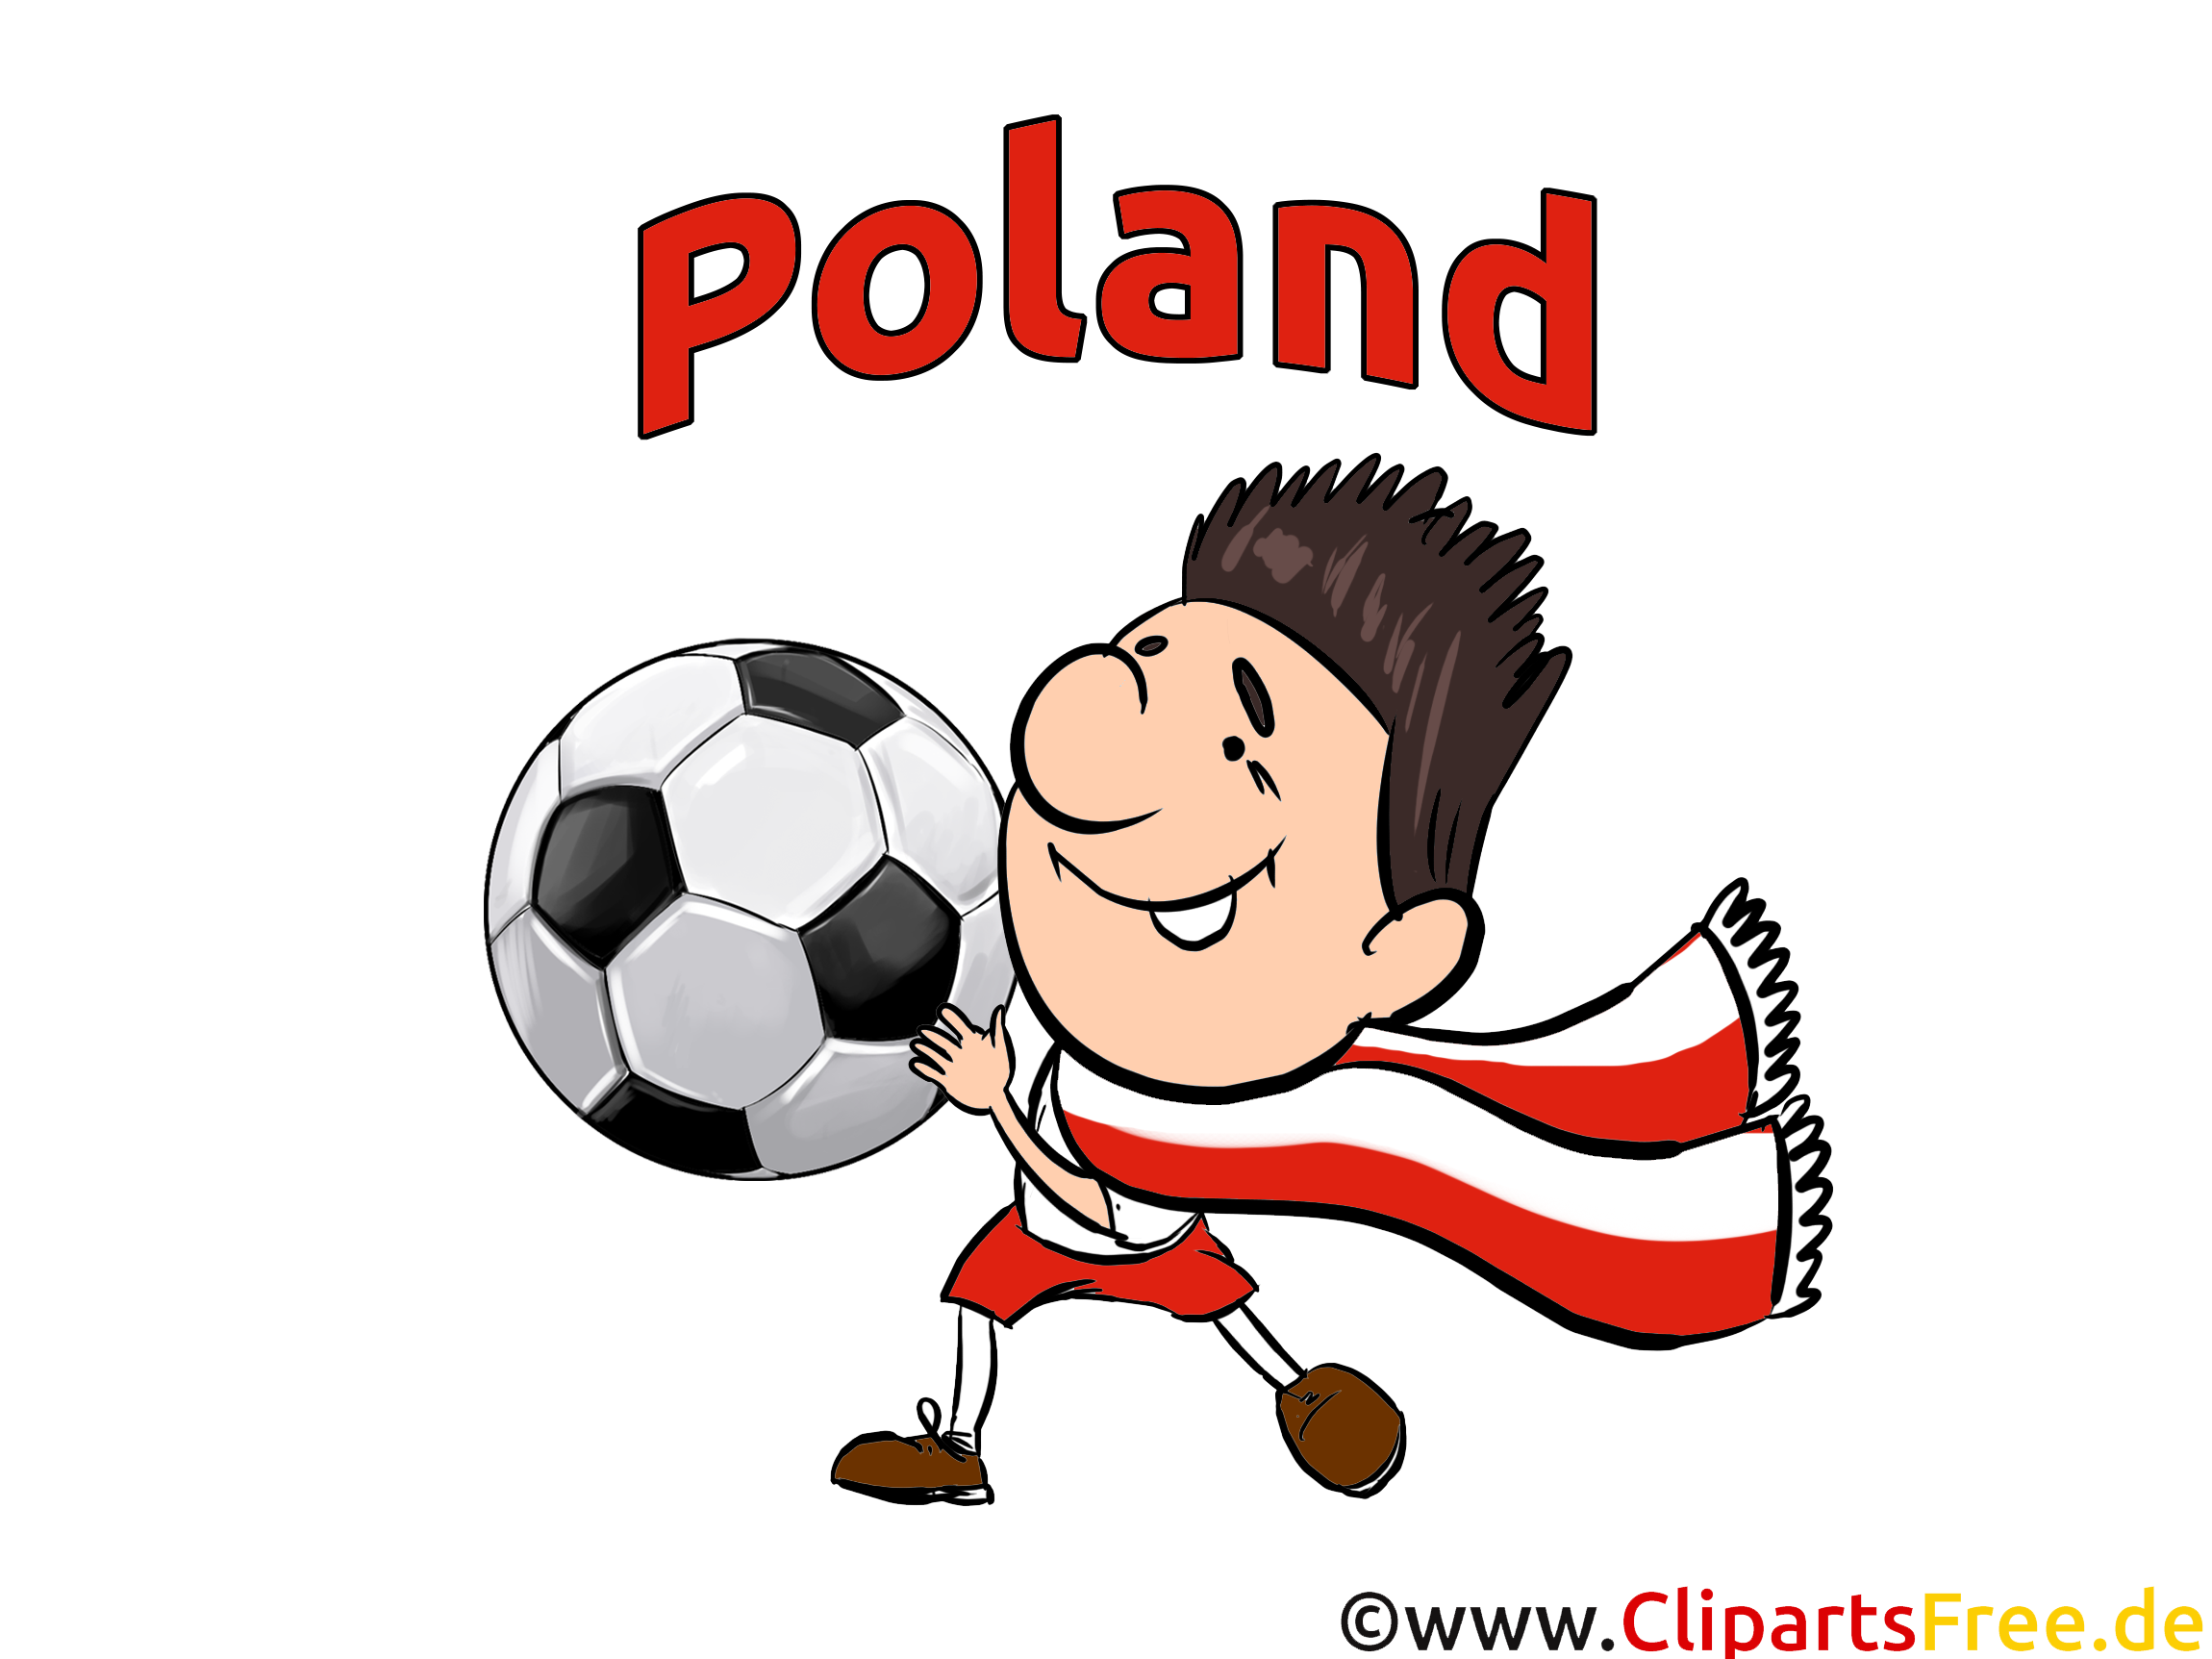 Football Pologne gratuitement télécharger Images